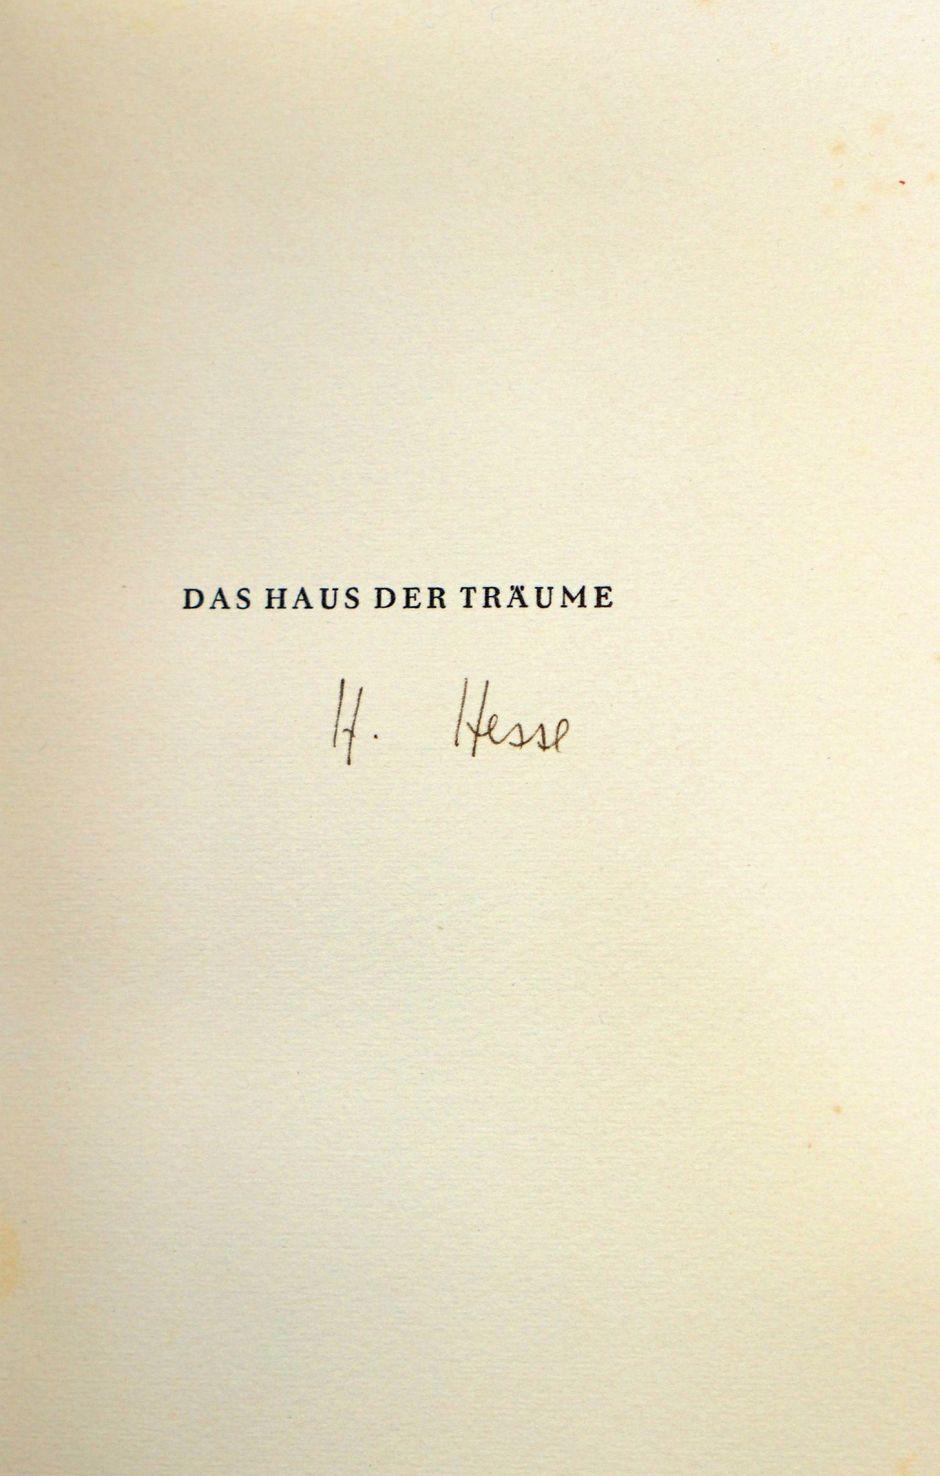 Lot 3159, Auction  115, Hesse, Hermann, Das Haus der Träume